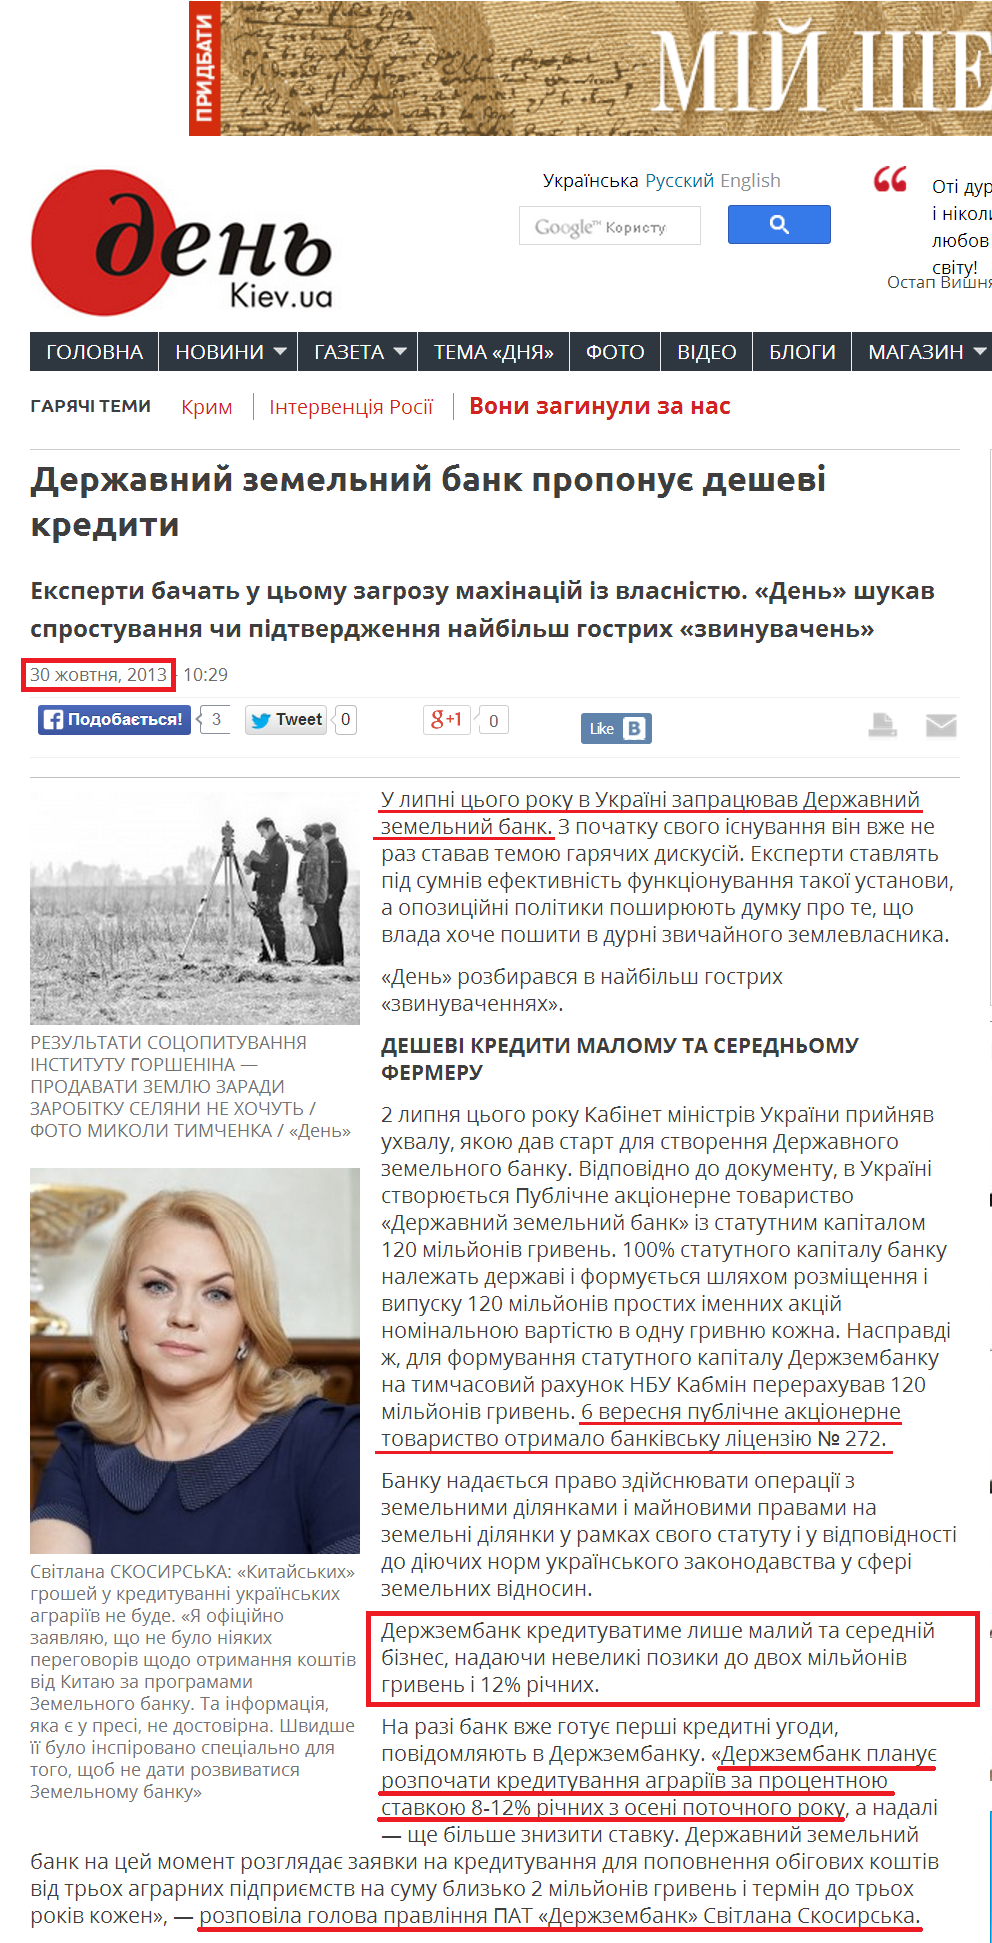 http://www.day.kiev.ua/uk/article/ekonomika/derzhavniy-zemelniy-bank-proponuie-deshevi-krediti